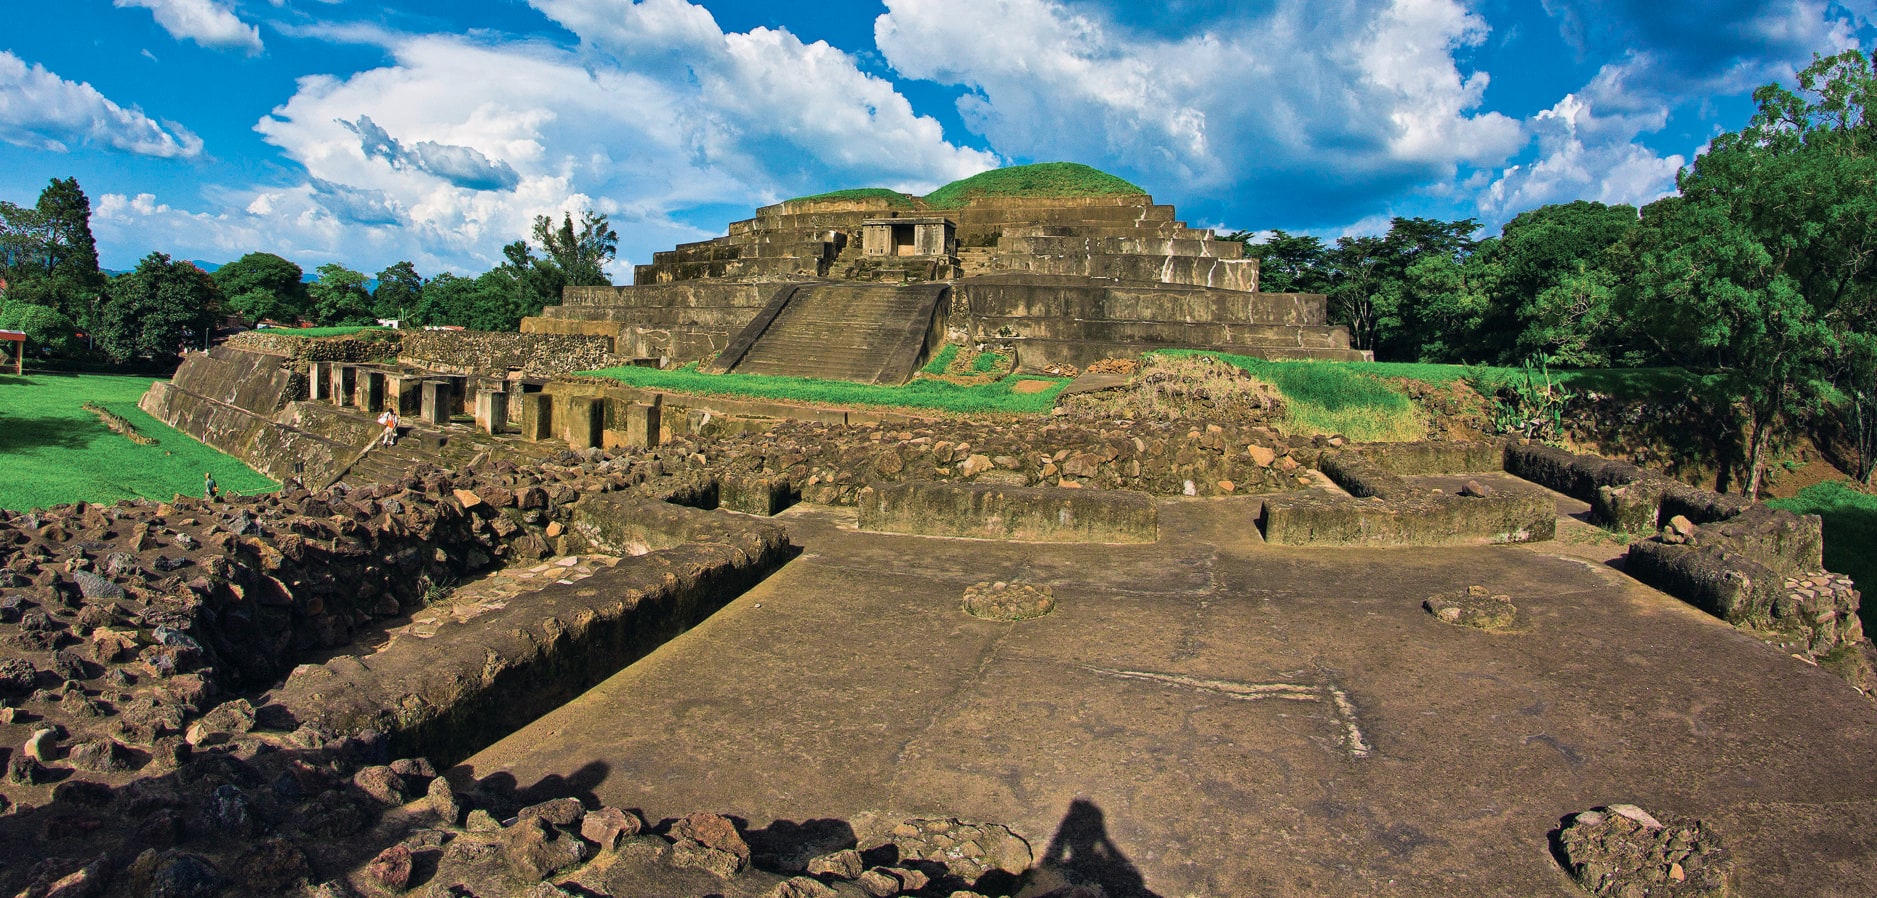 La estructura piramidal más alta de El Salvador. Tazumal, a unos 60 km al oeste de la capital San Salvador en Chalchuapa, está considerada entre las ruinas mejor conservadas de El Salvador y con la estructura piramidal más alta.